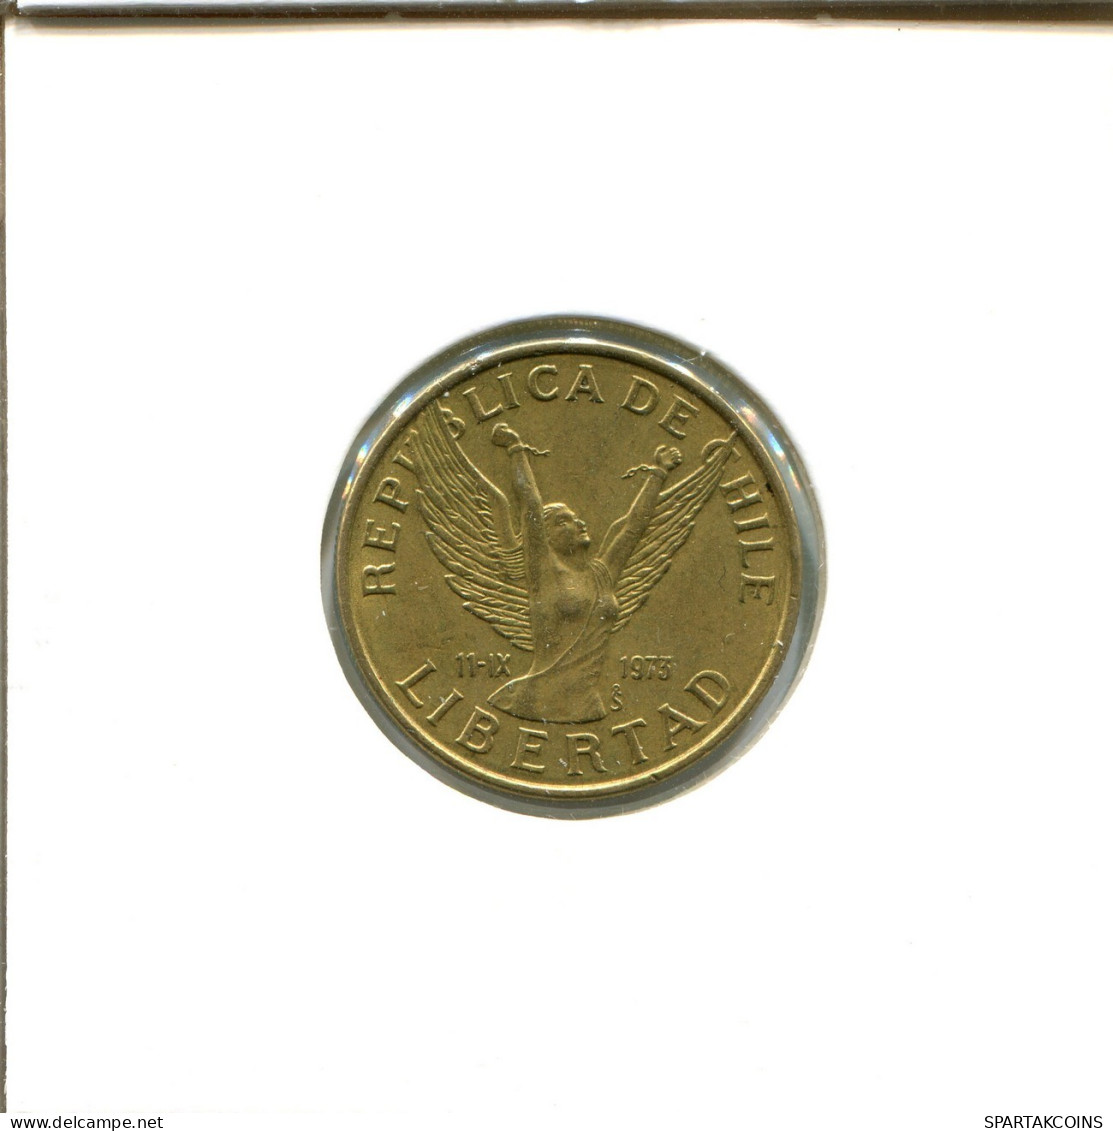 10 PESOS 1981 CHILE Moneda #AX487.E.A - Cile